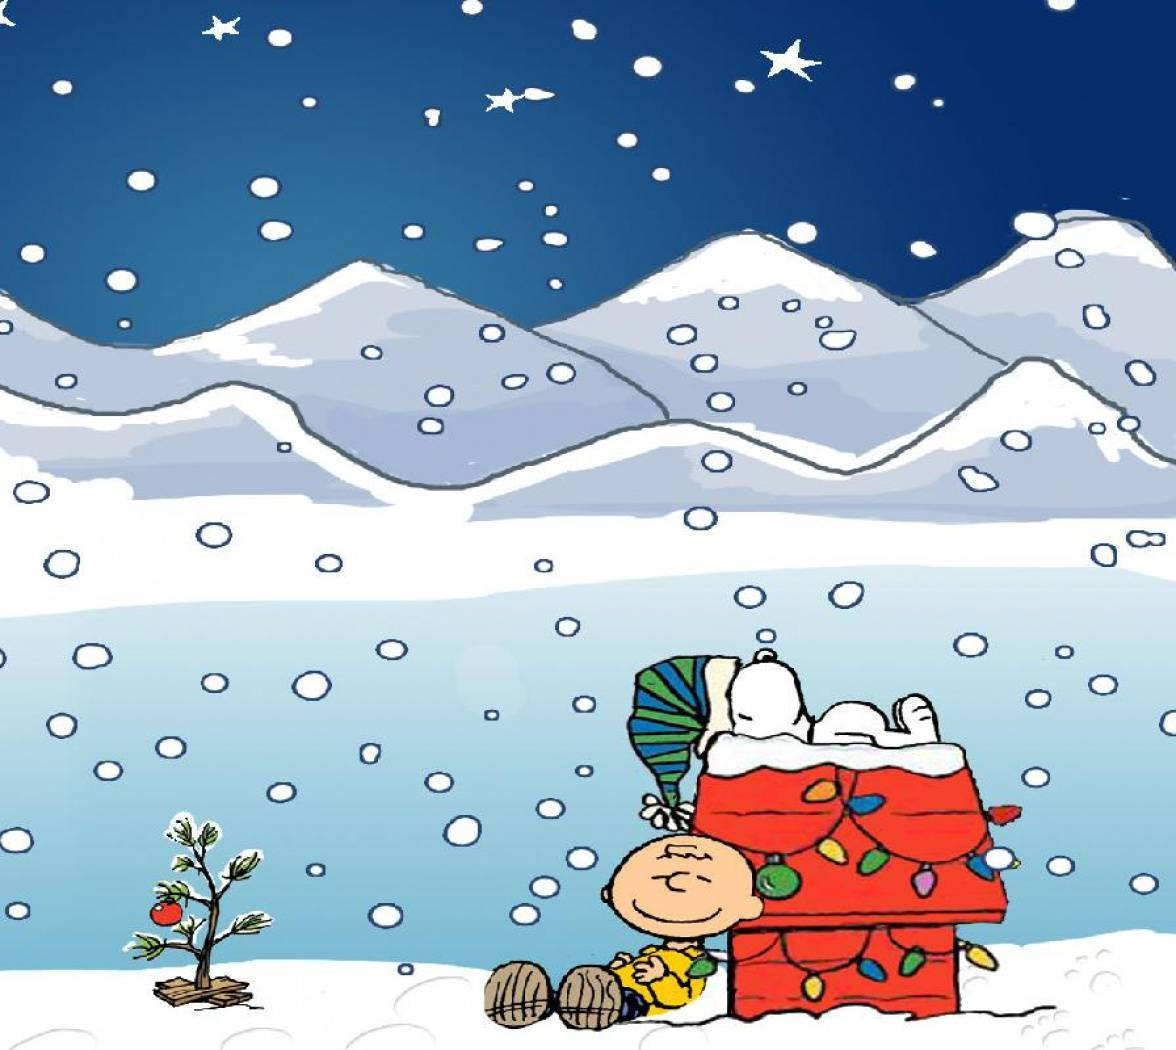 Feiernsie Die Feiertage Mit Snoopy! Wallpaper